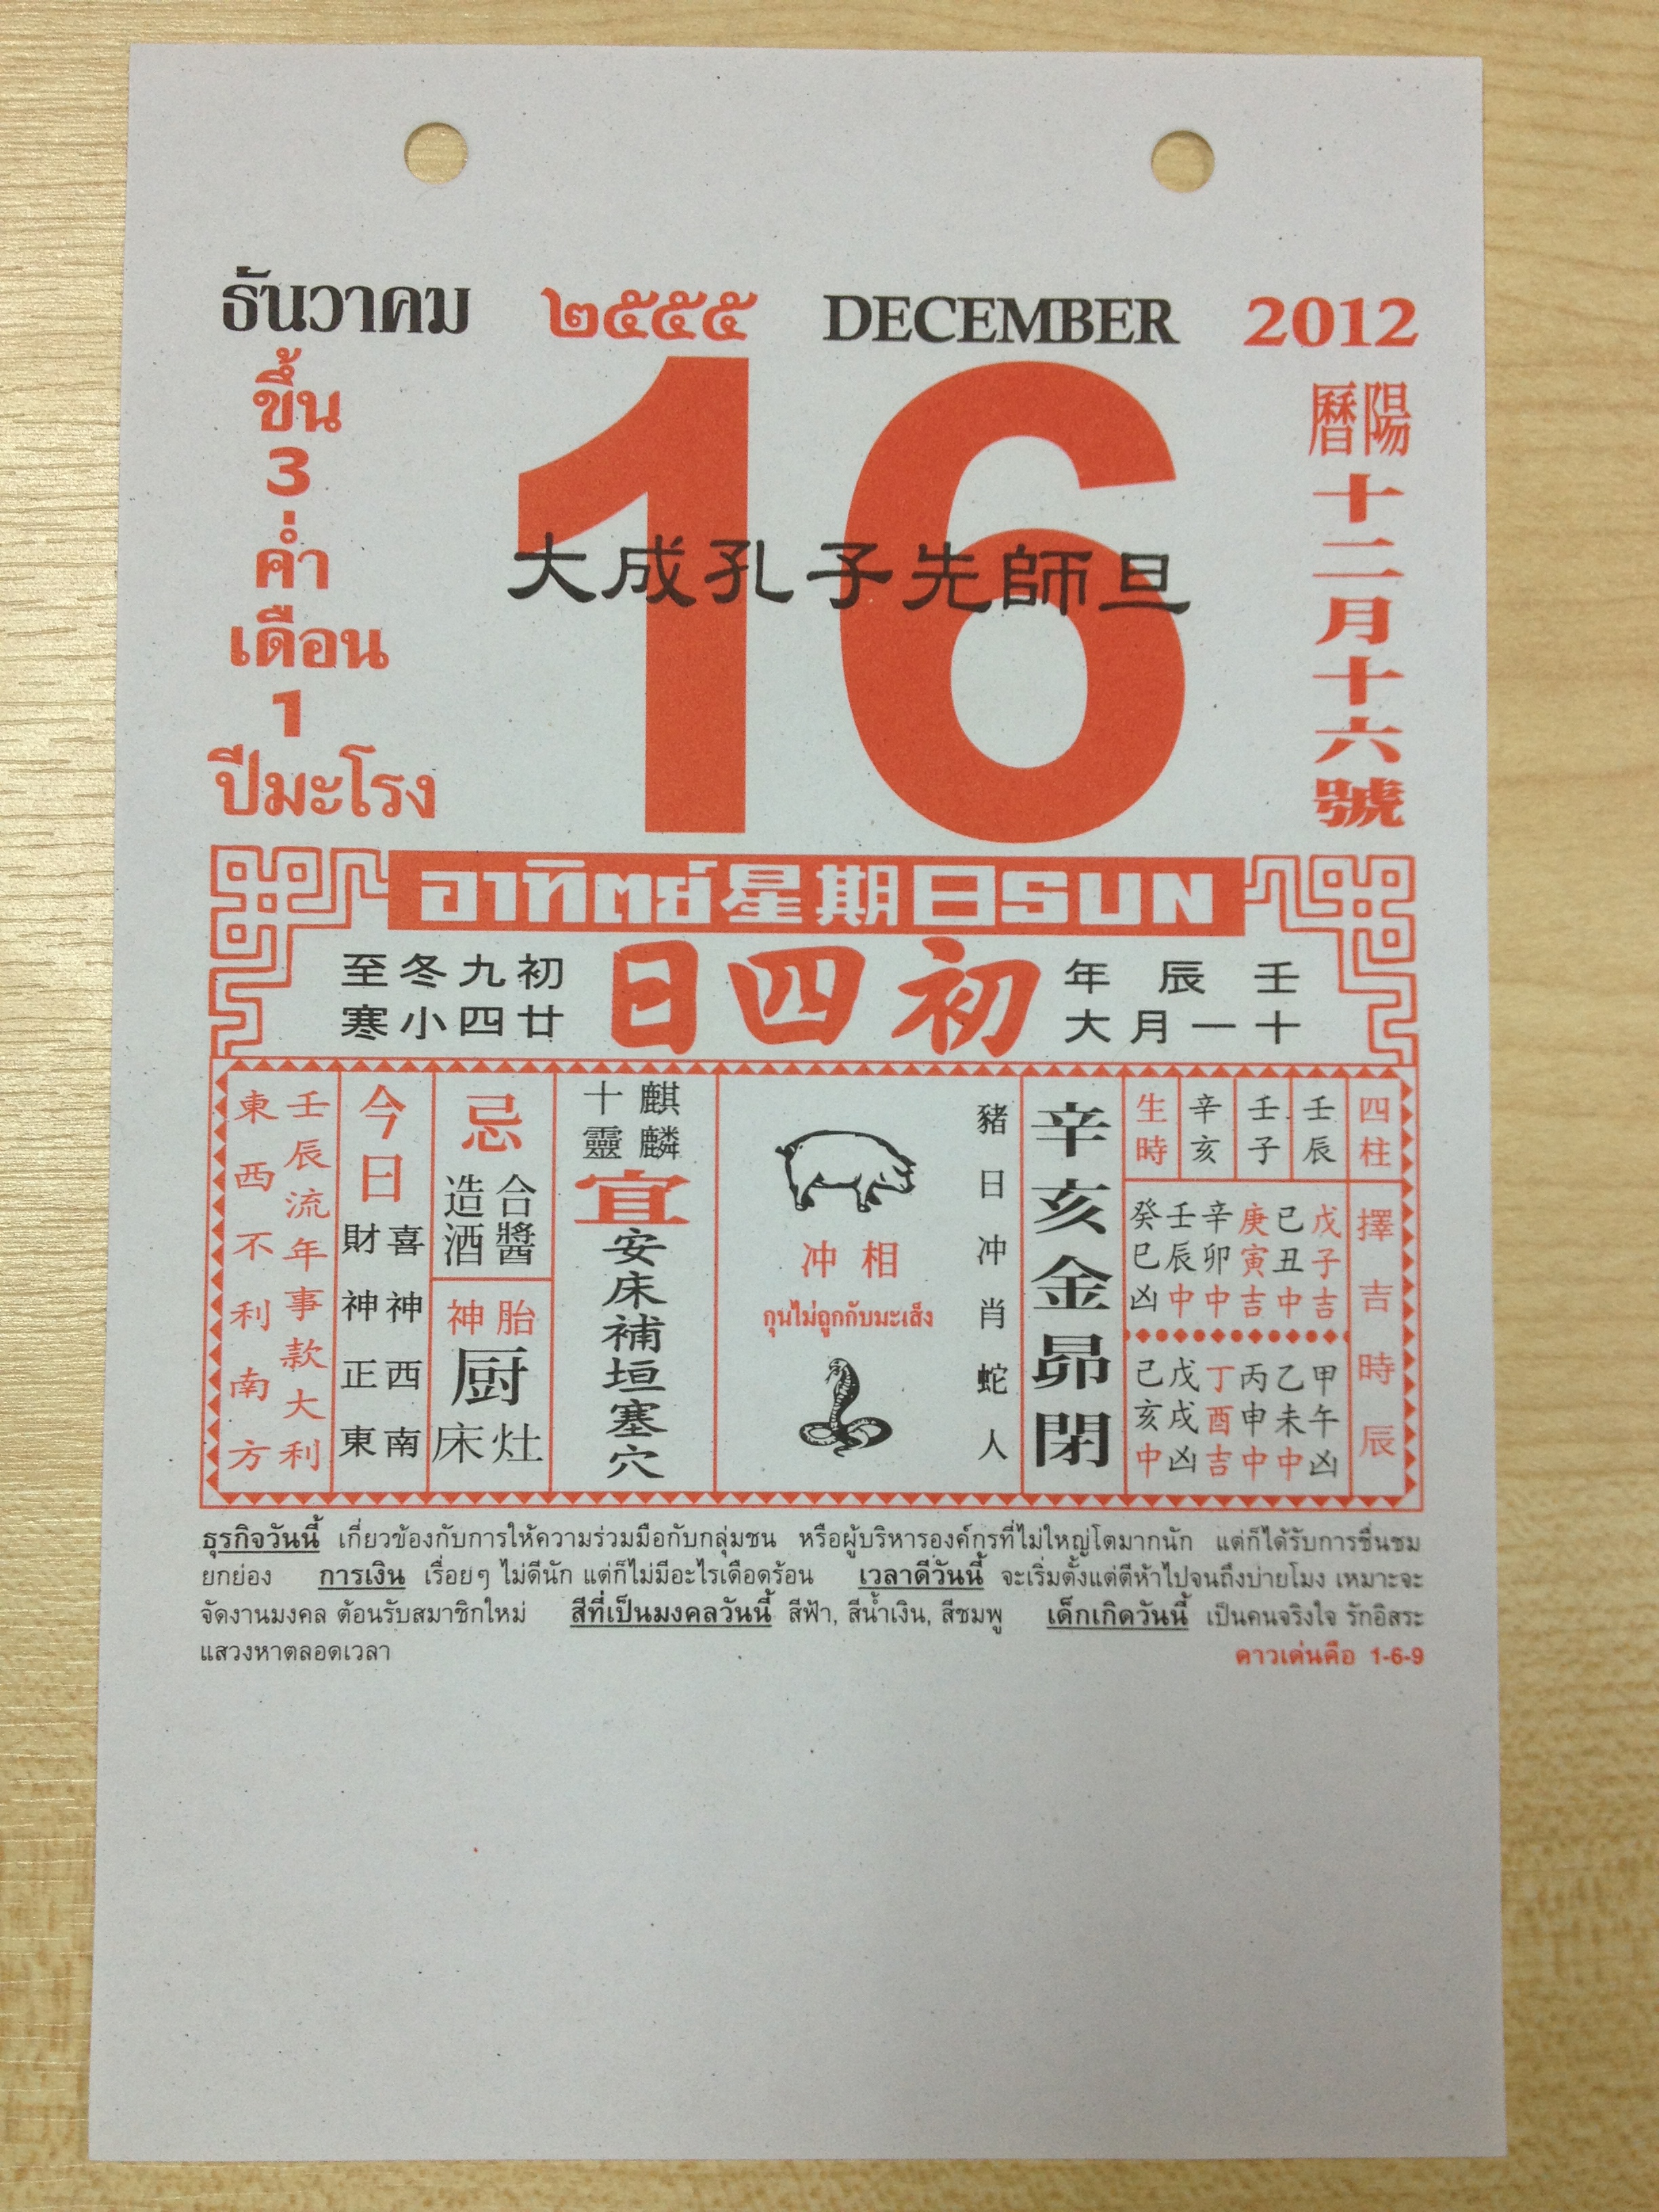 ปฎิทินจีนเลขมงคล วันที่ 16-12-2012